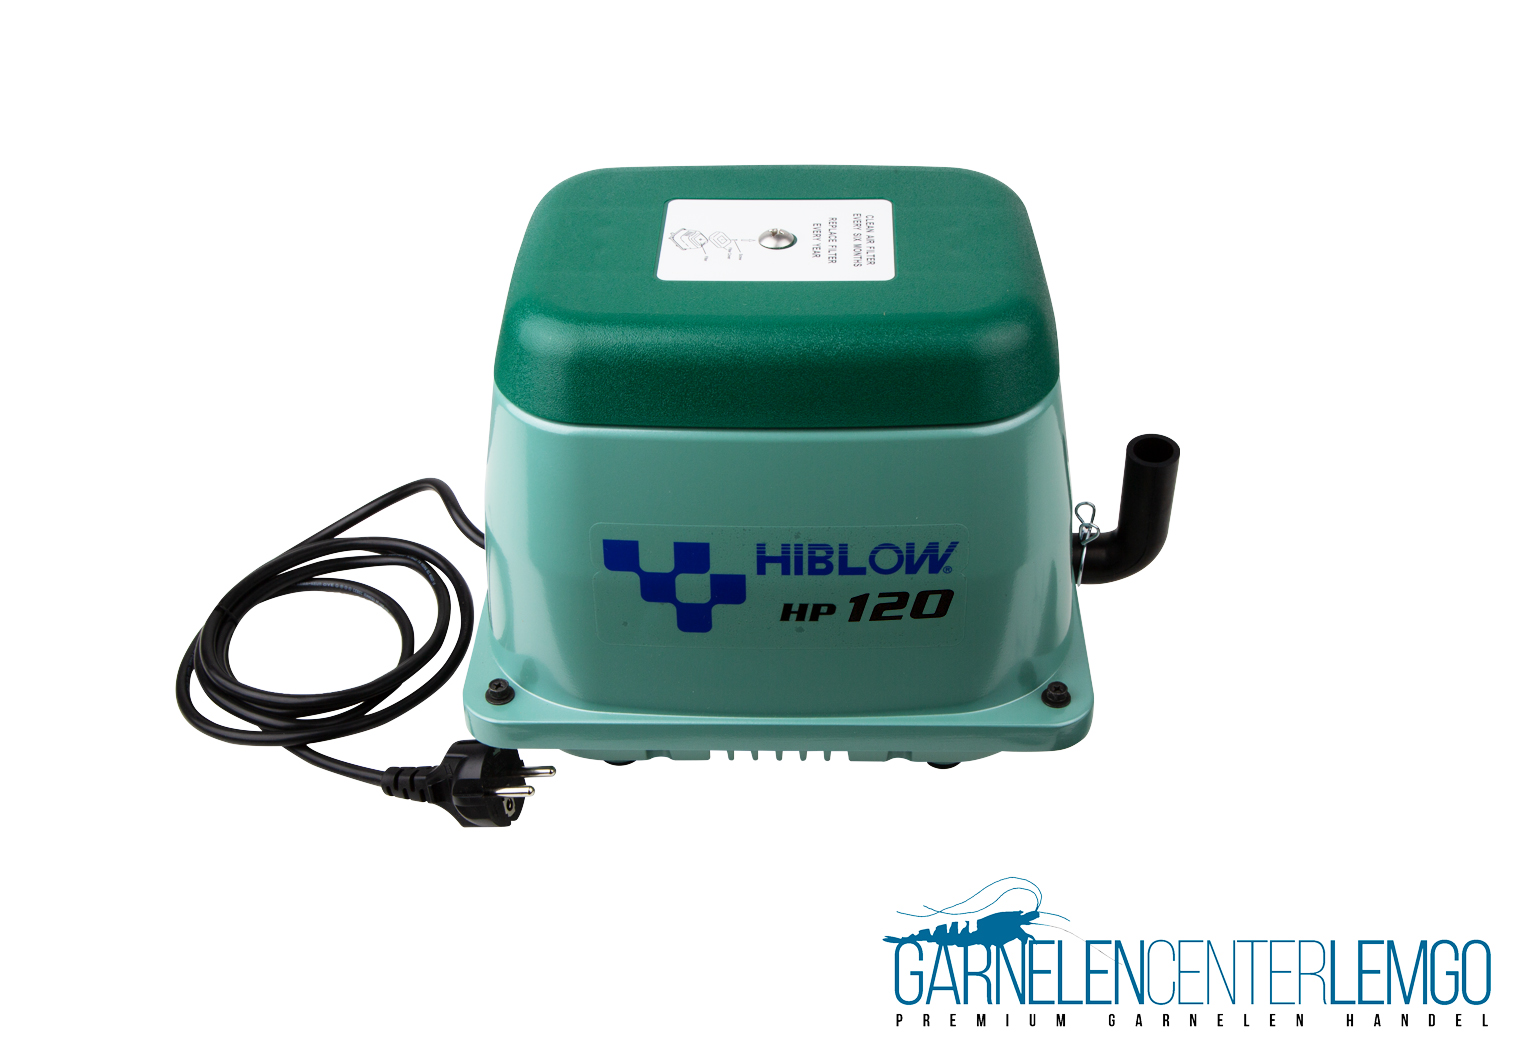 Hiblow HP 80 Sauerstoffpumpe